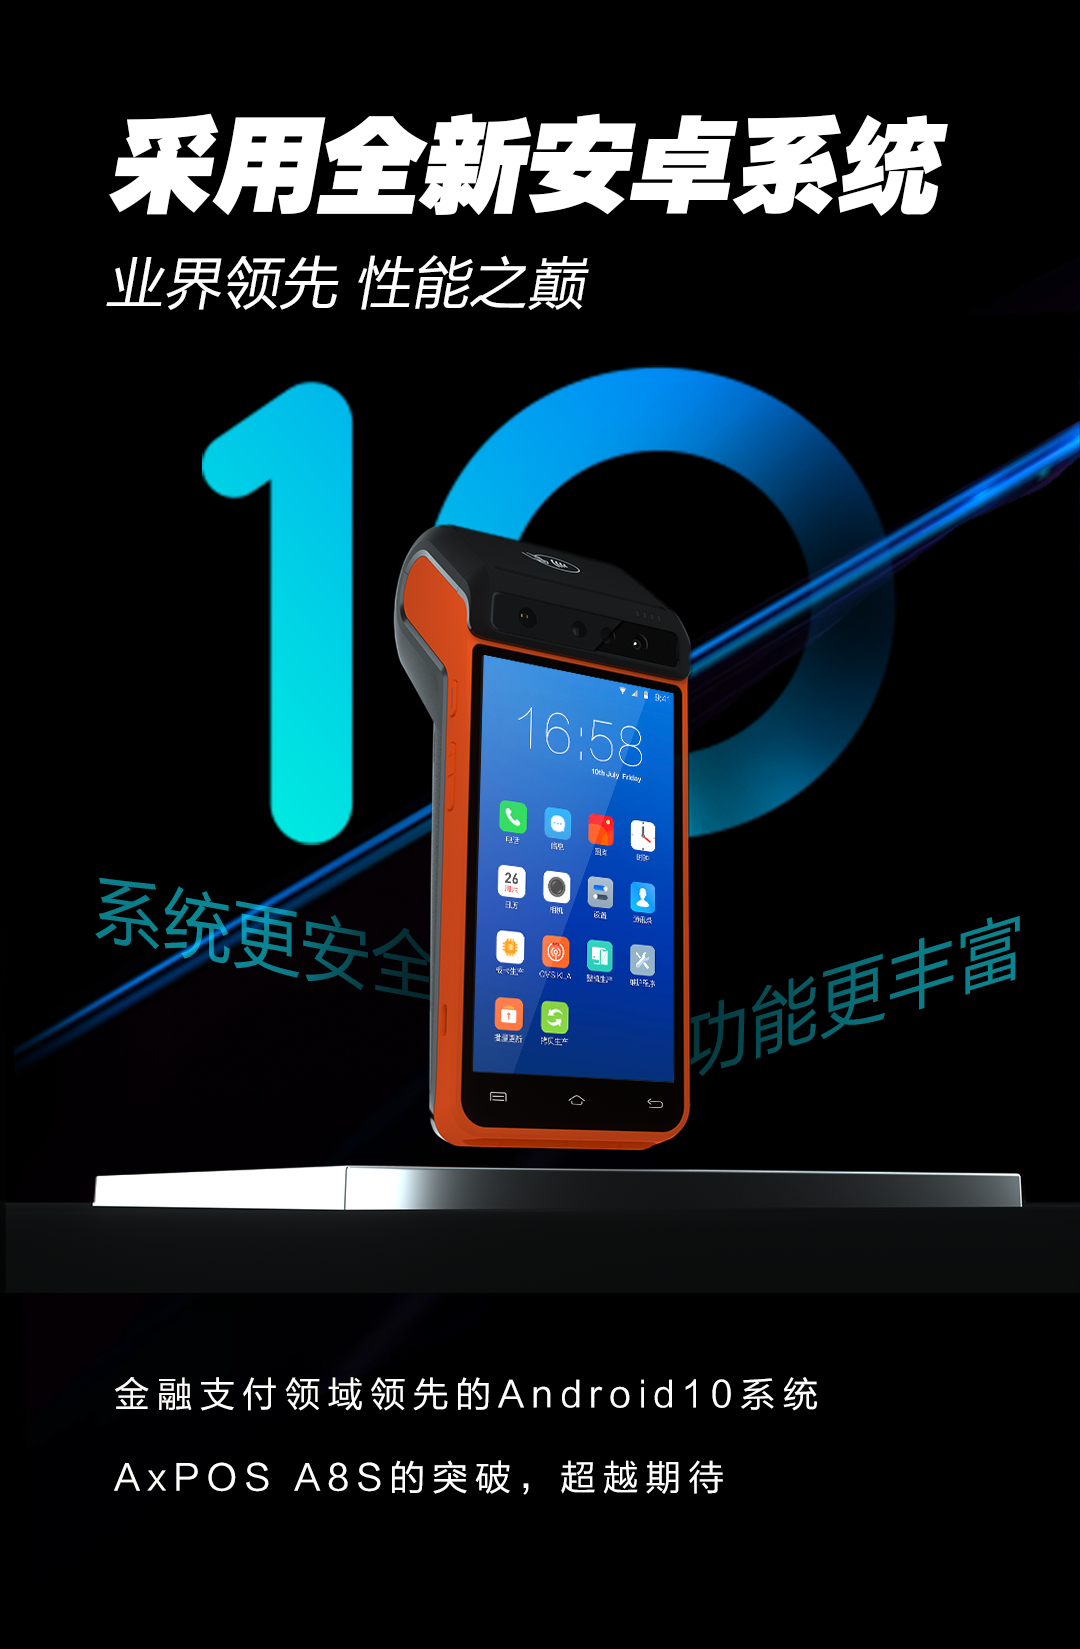 联迪商用发布首款Android 10智能POS